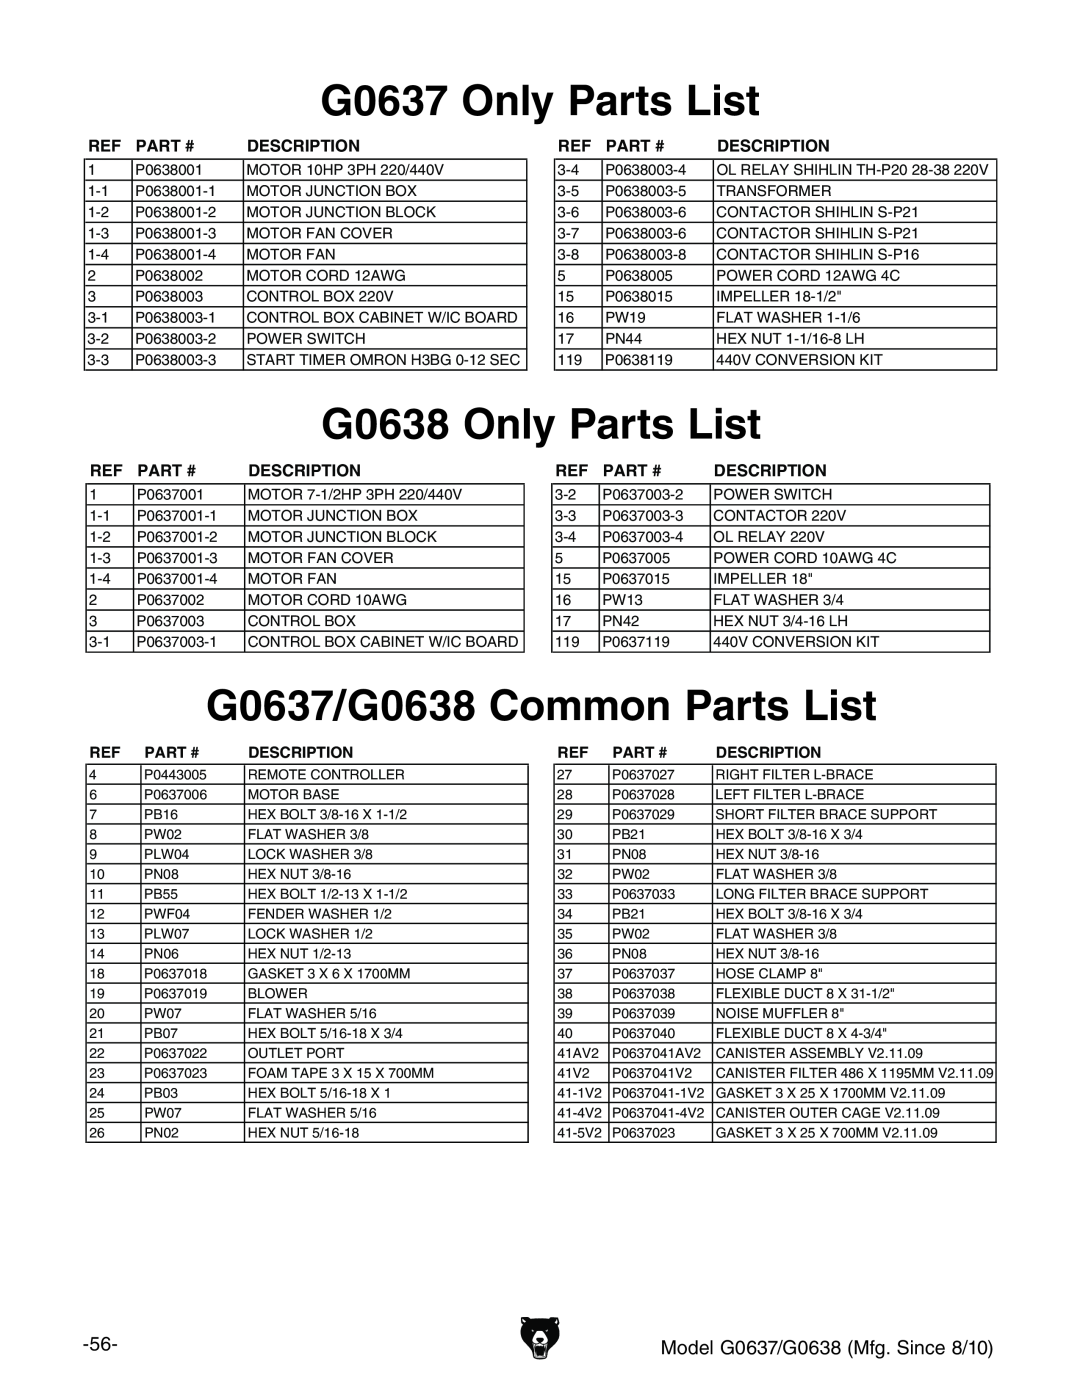 Grizzly G0637 Only Parts List, G0638 Only Parts List, G0637/G0638 Common Parts List, Ref Part #, Description 